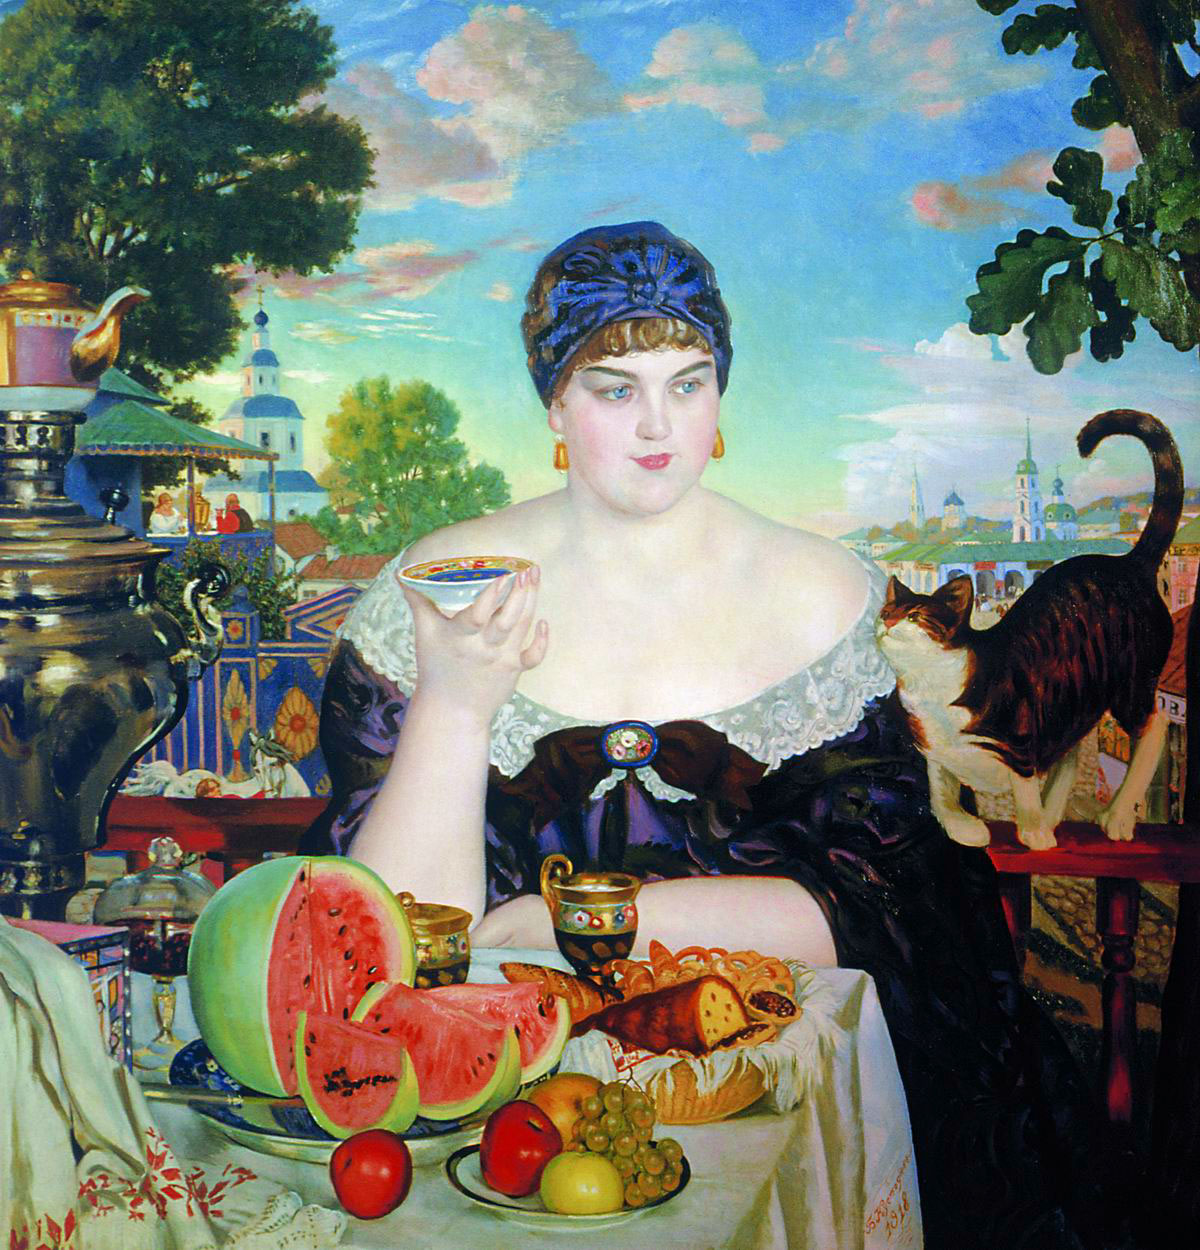 ボリス・クストーディエフは、特徴的なロシア女性のタイプというものを、『商人の妻』、『ヴォルガ川の娘』や『美』といった作品で再現するとともに、画家としての彼の感嘆の念とちょっぴりの皮肉をも含ませている。/ 『茶を飲む商人の妻』、ボリス・クストーディエフ、1918年